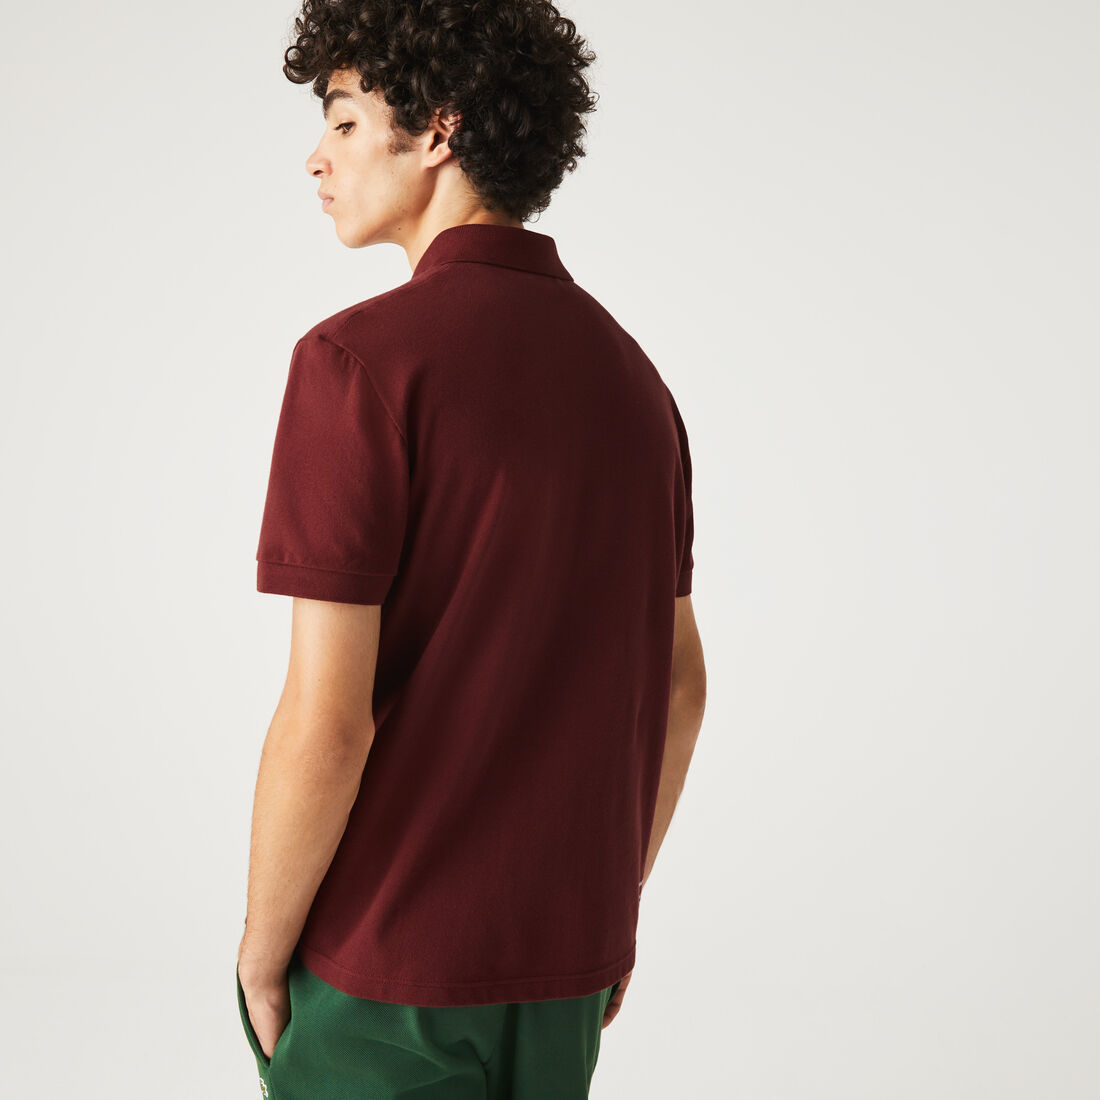 Lacoste Branded Stretch Mini Piqué Polo Shirts Herren Bordeaux | HXAZ-37962